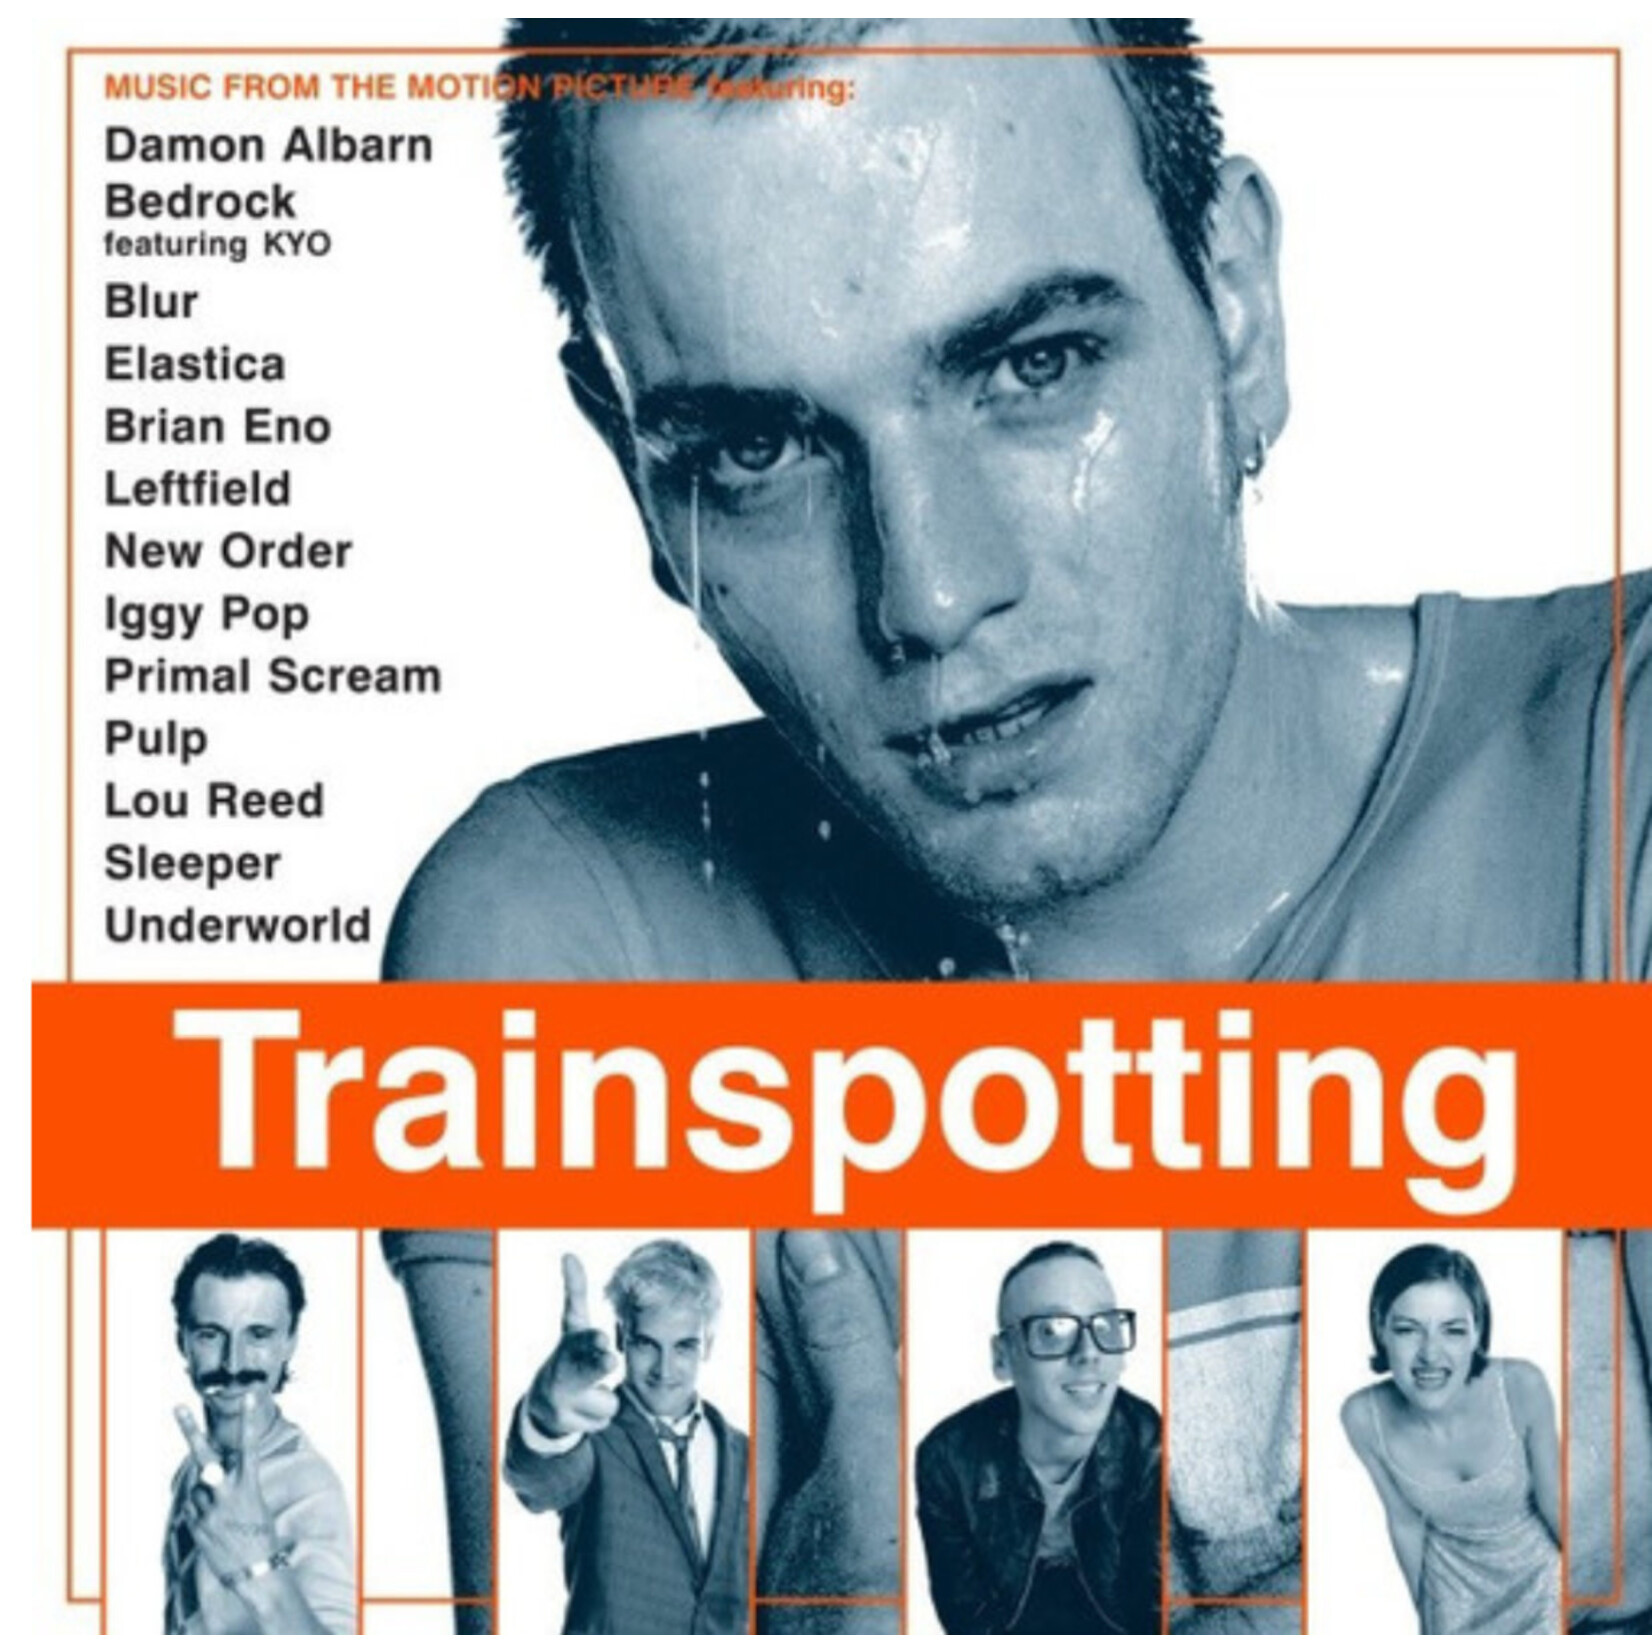 Trainspotting - Original Motion Picture Soundtrack - Vinyl LP (NEW)